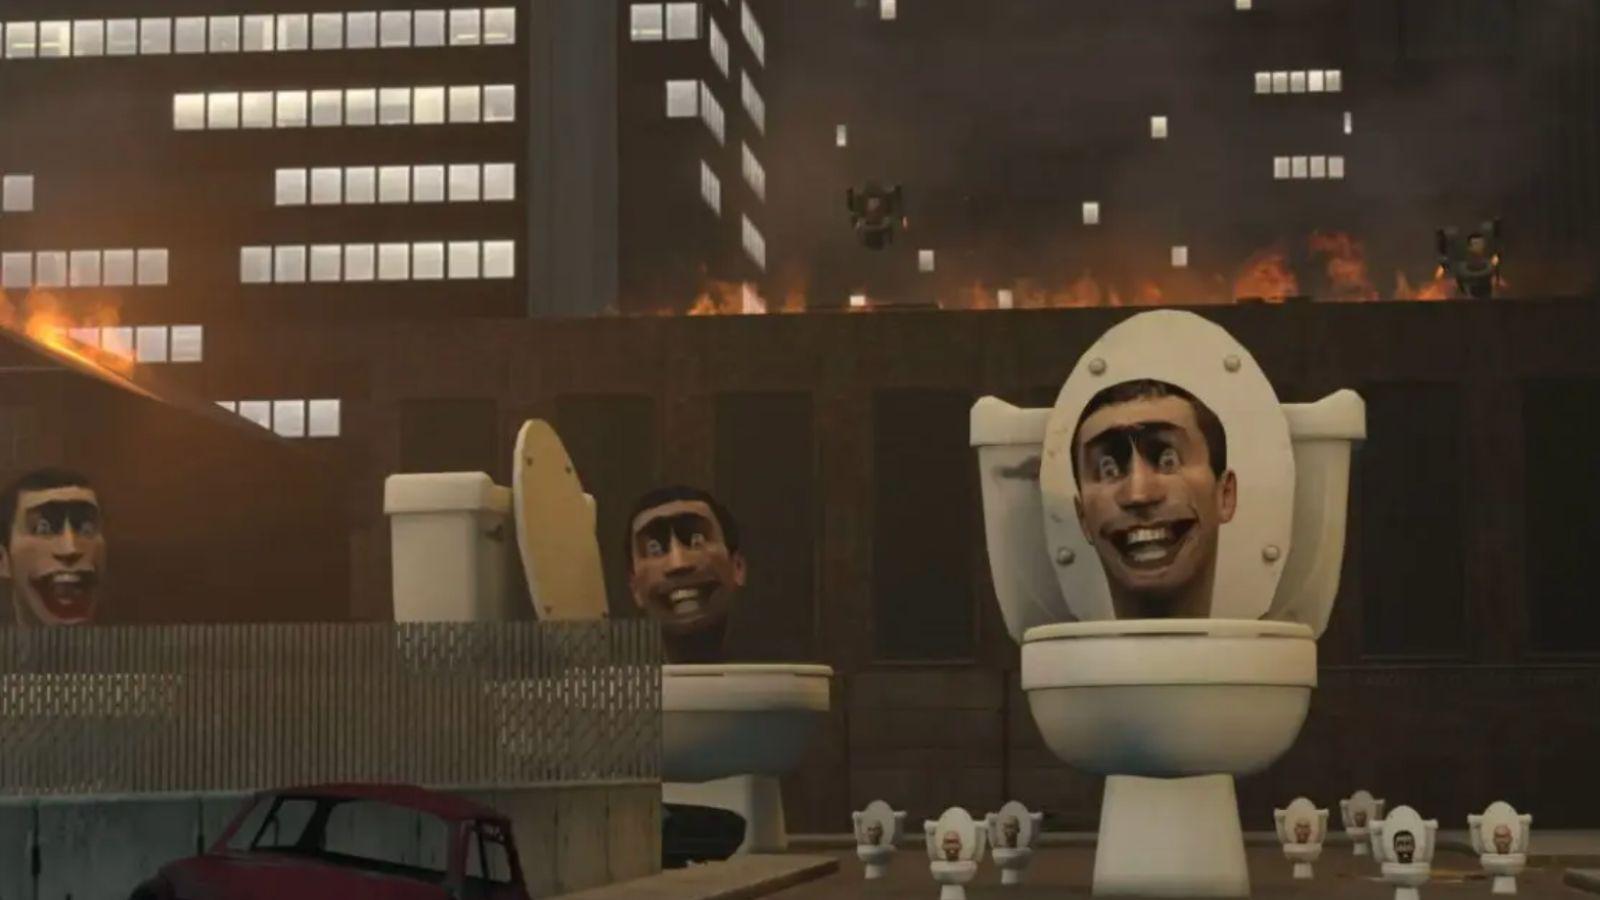 So this is Skibidi Toilet? 